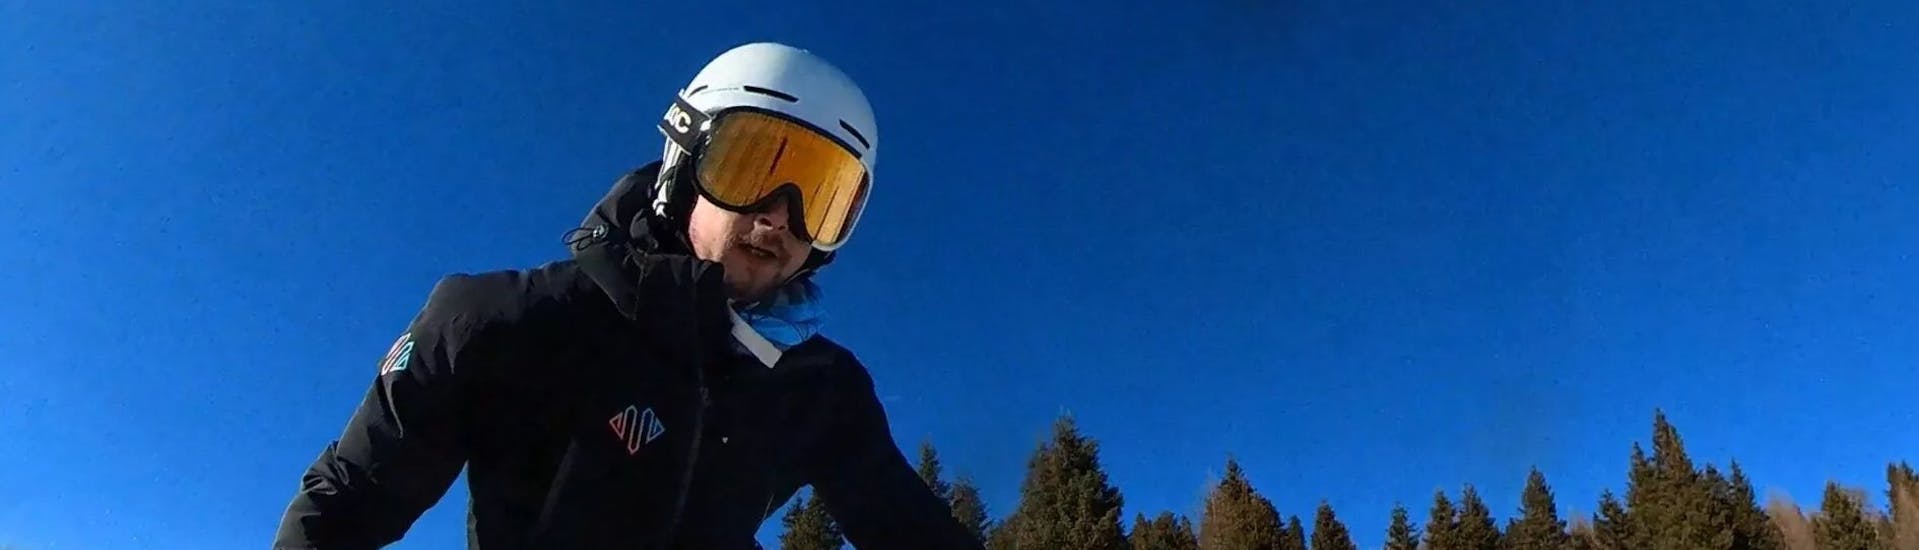 Kinder-Skikurs ab 6 Jahren mit Erfahrung.